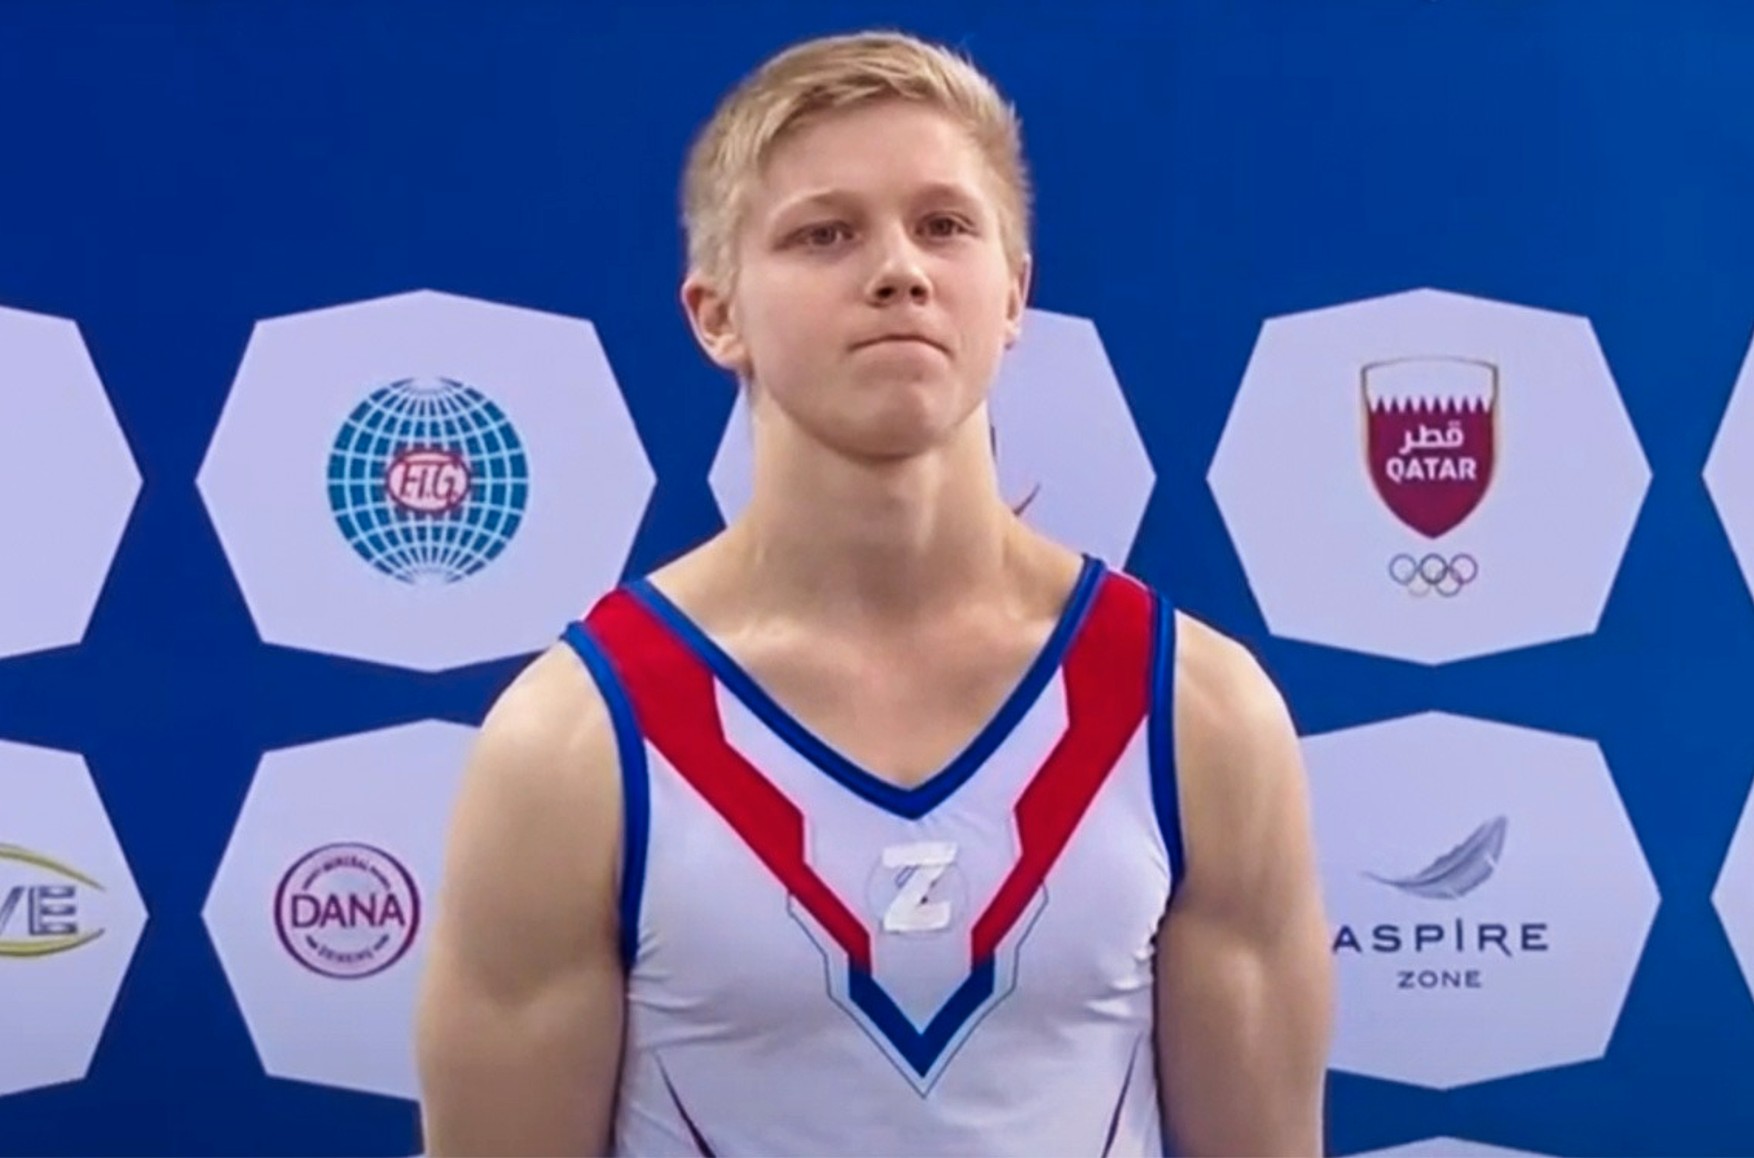 Российский гимнаст дисквалифицирован на год за букву Z на награждении. Он занял третье место, первым стал украинец